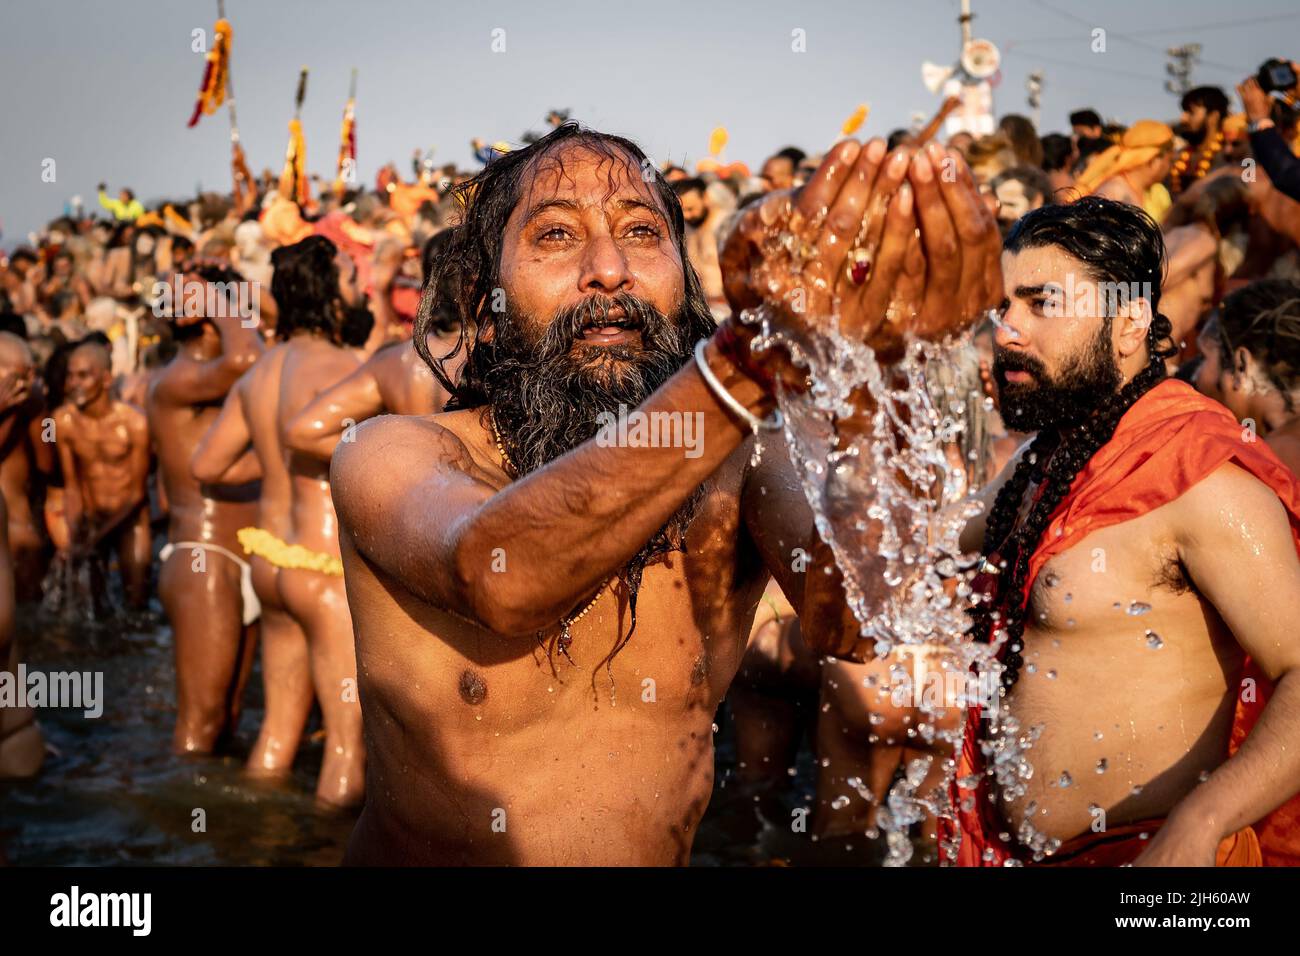 Ein Hindu-Gläubiger, der beim Kumbh Mela-Festival in Allahabad, Indien, betet und im heiligen Ganges-Fluss mit Tausenden von anderen Anhängern badet. Stockfoto